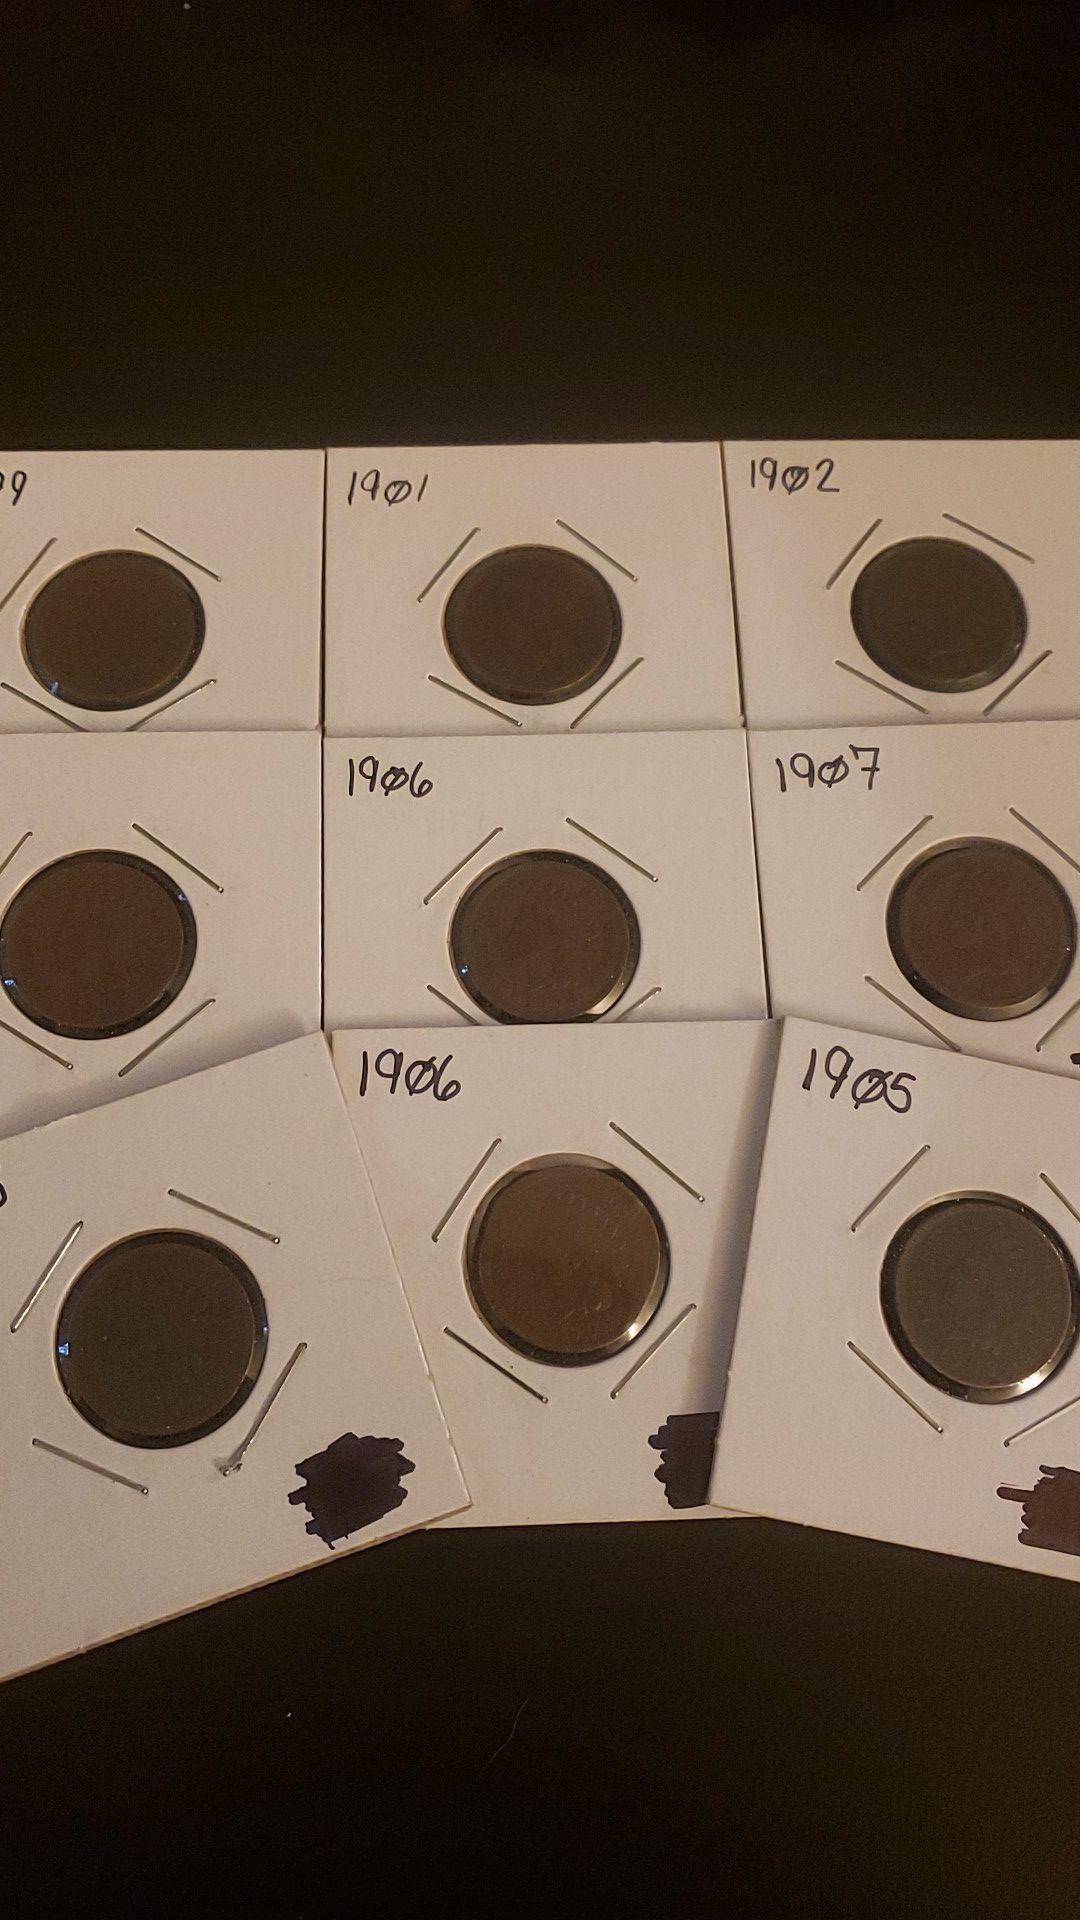 9 Indiana head pennies